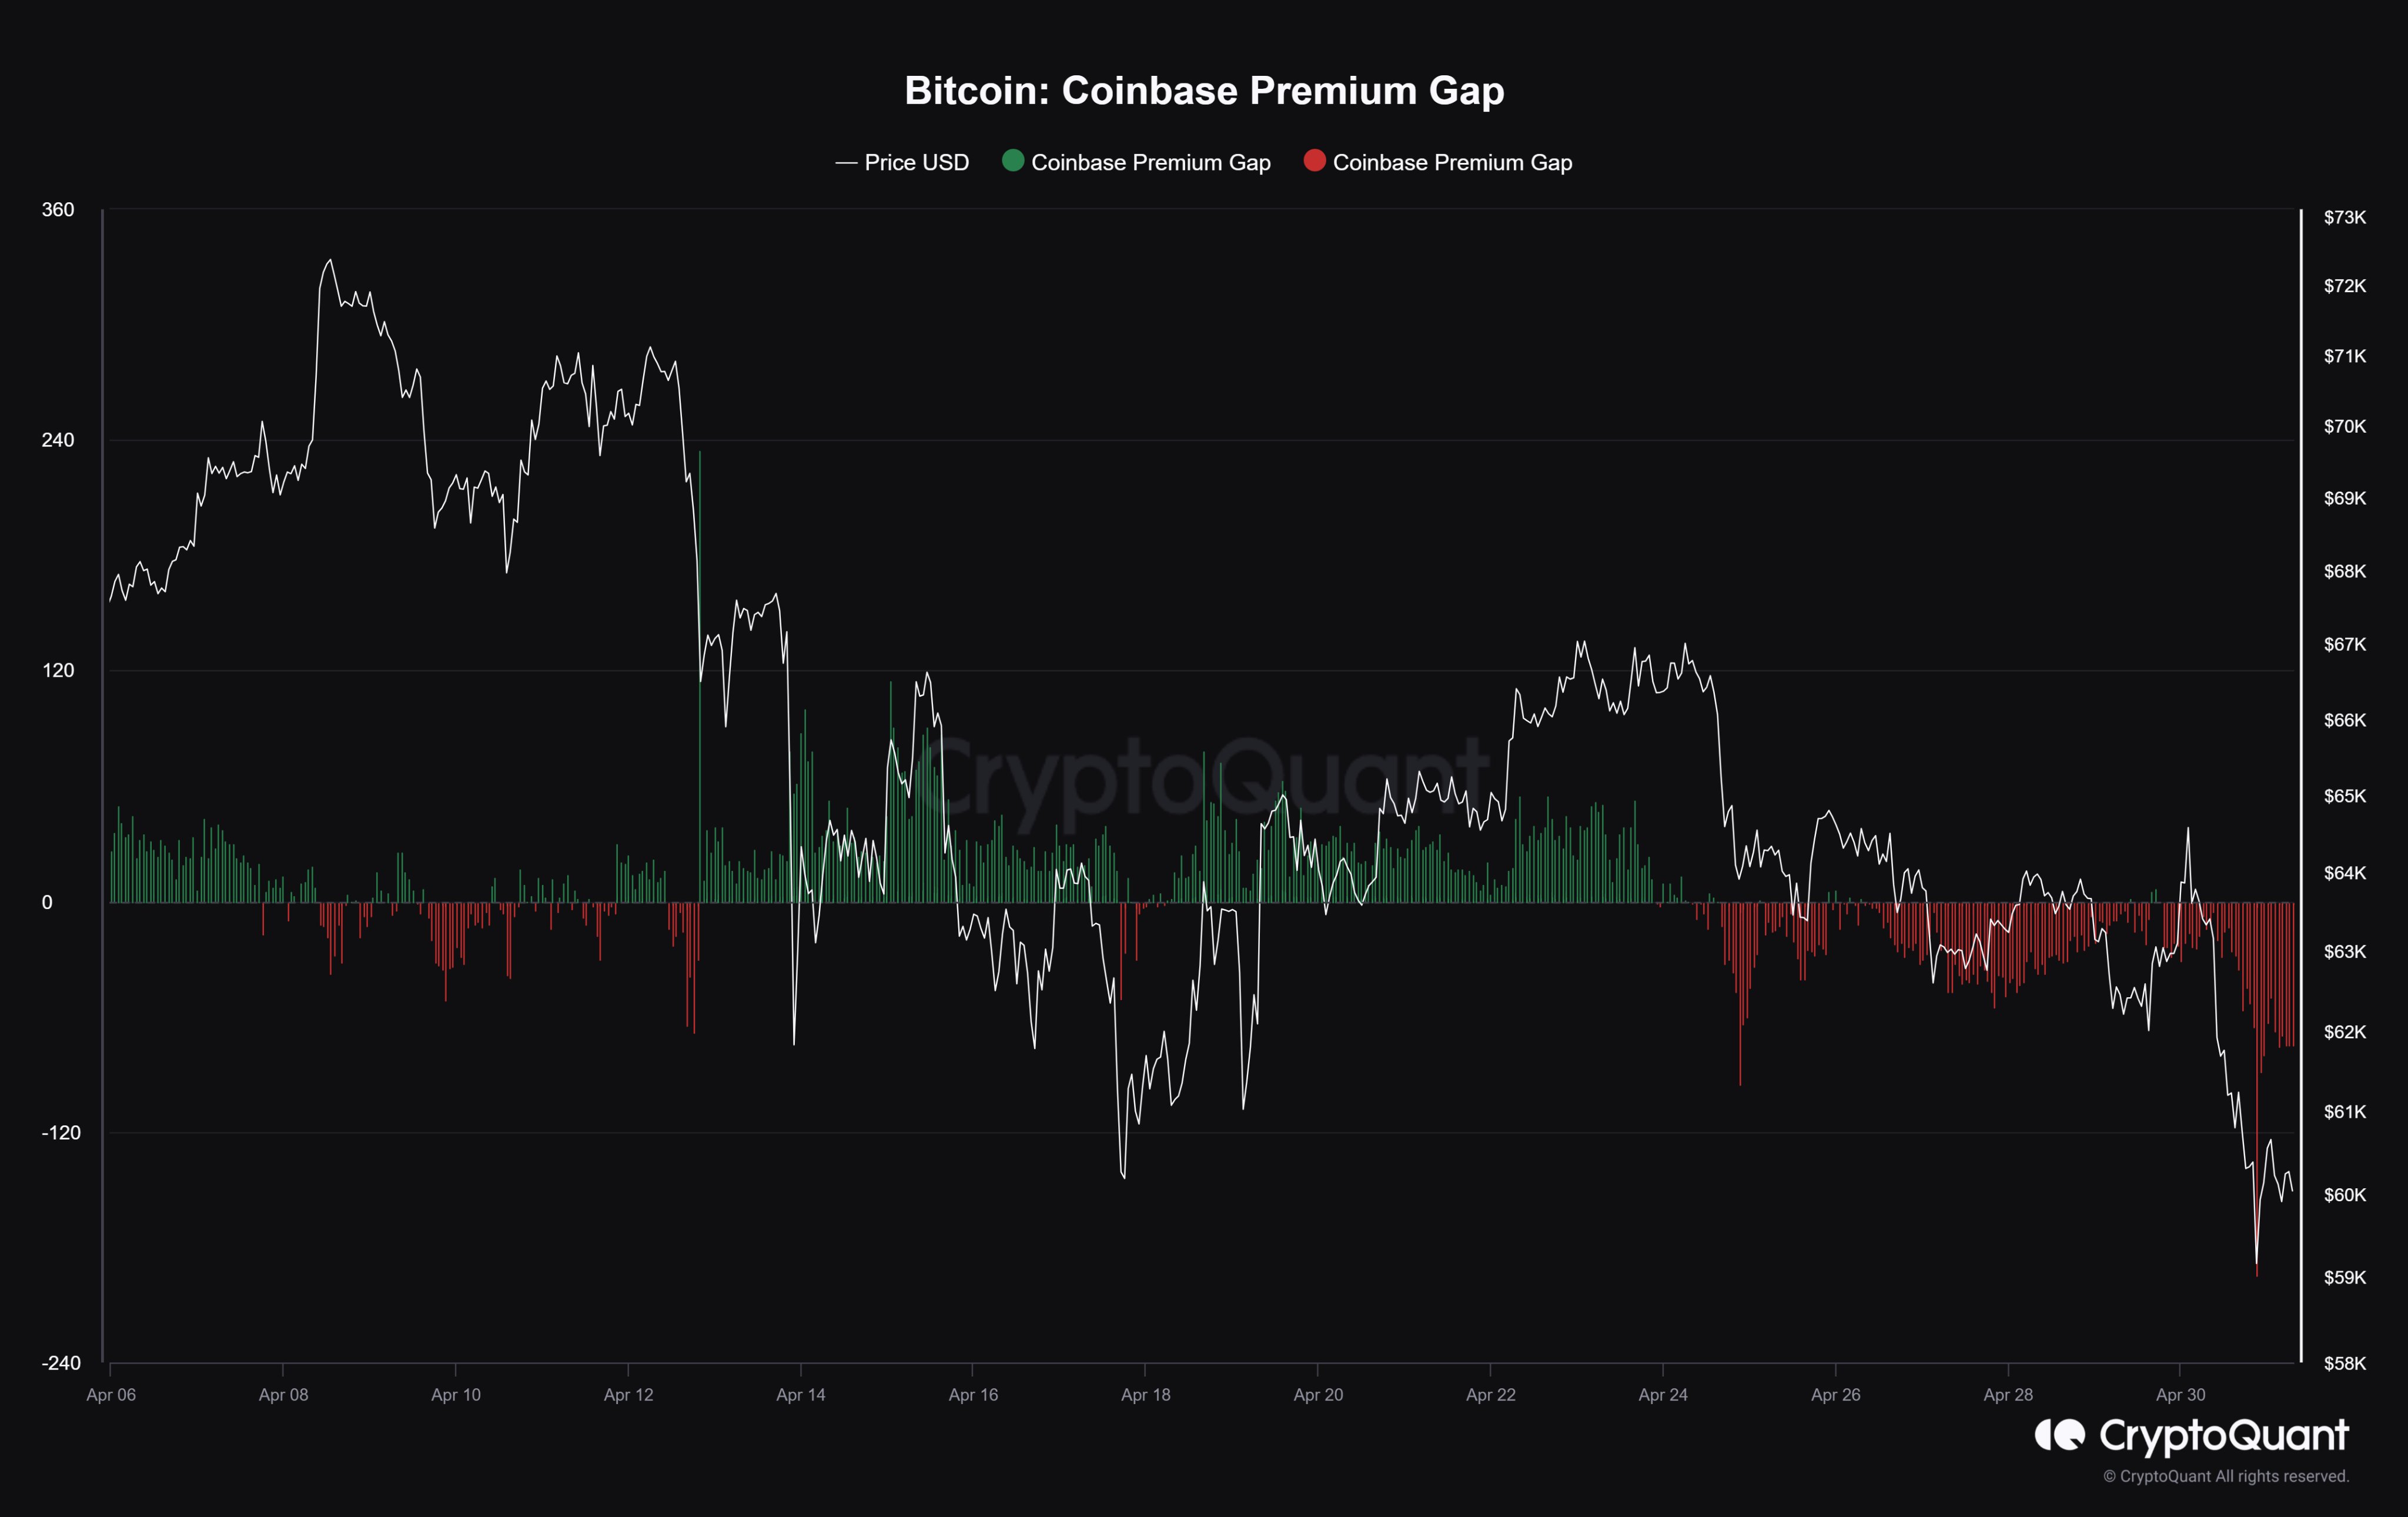 Bitcoin Coinbase Premium Gap